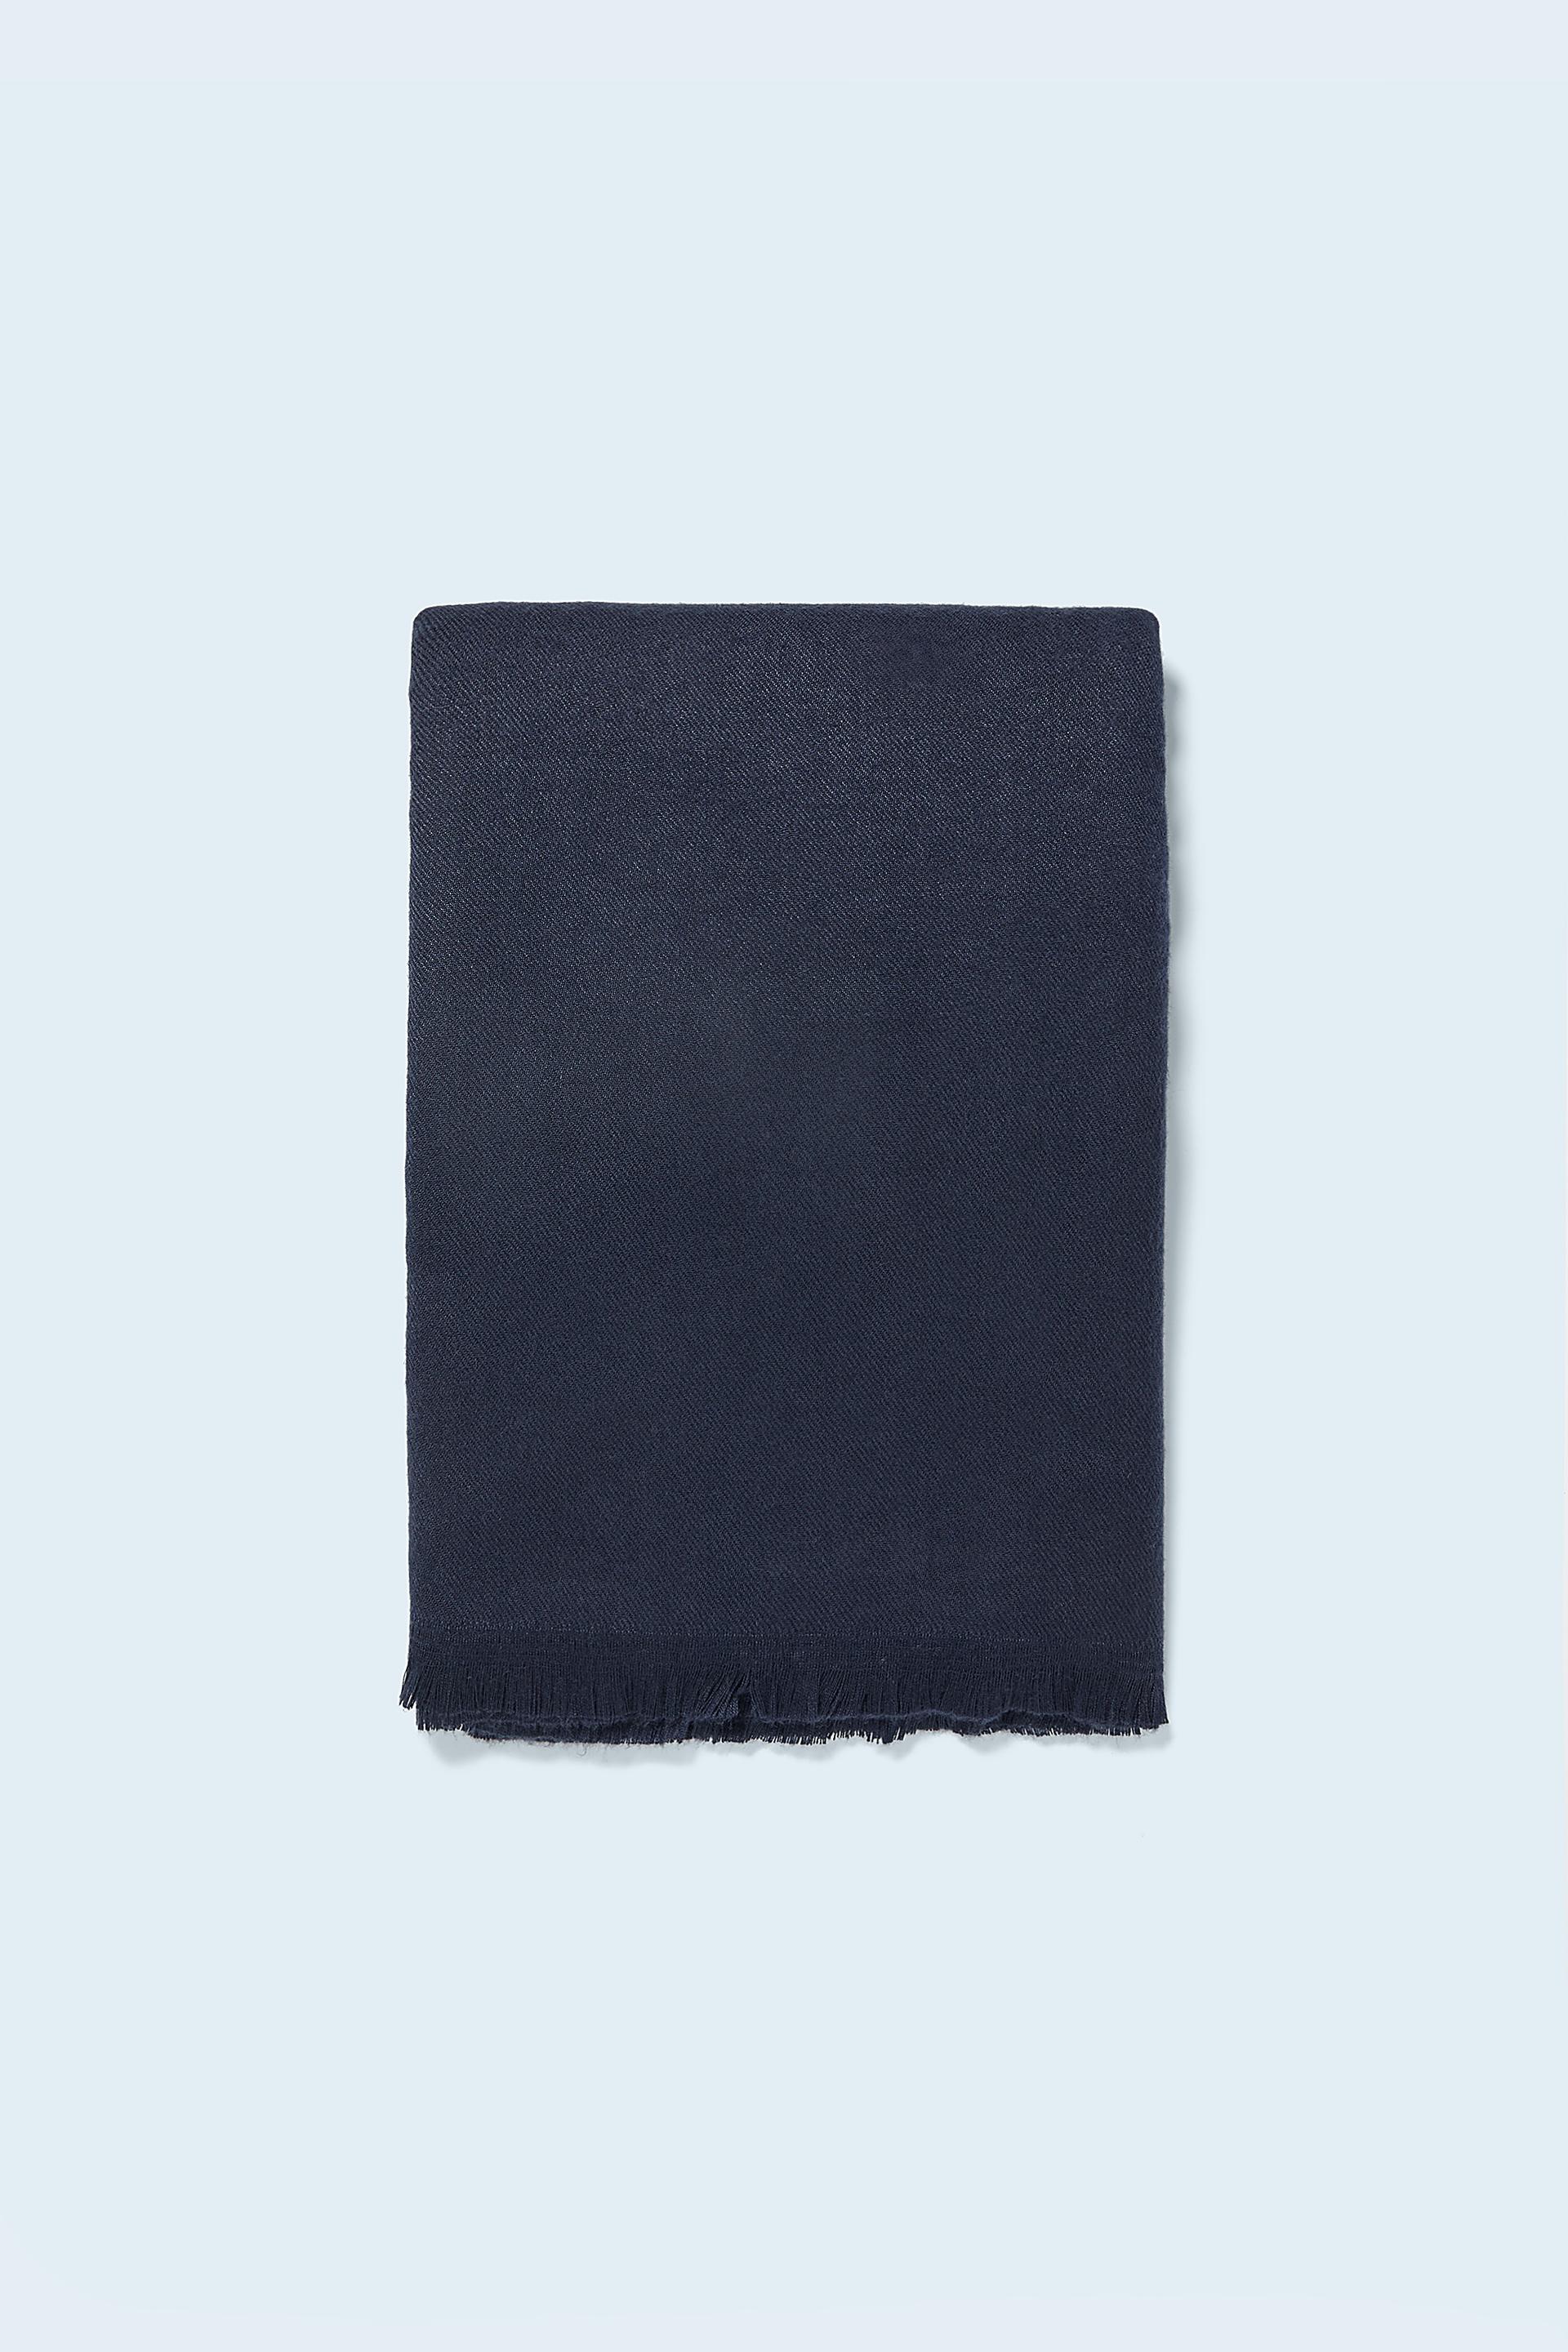 МОРСКОЙ СИНИЙ базовый шарф из струящейся ткани Zara